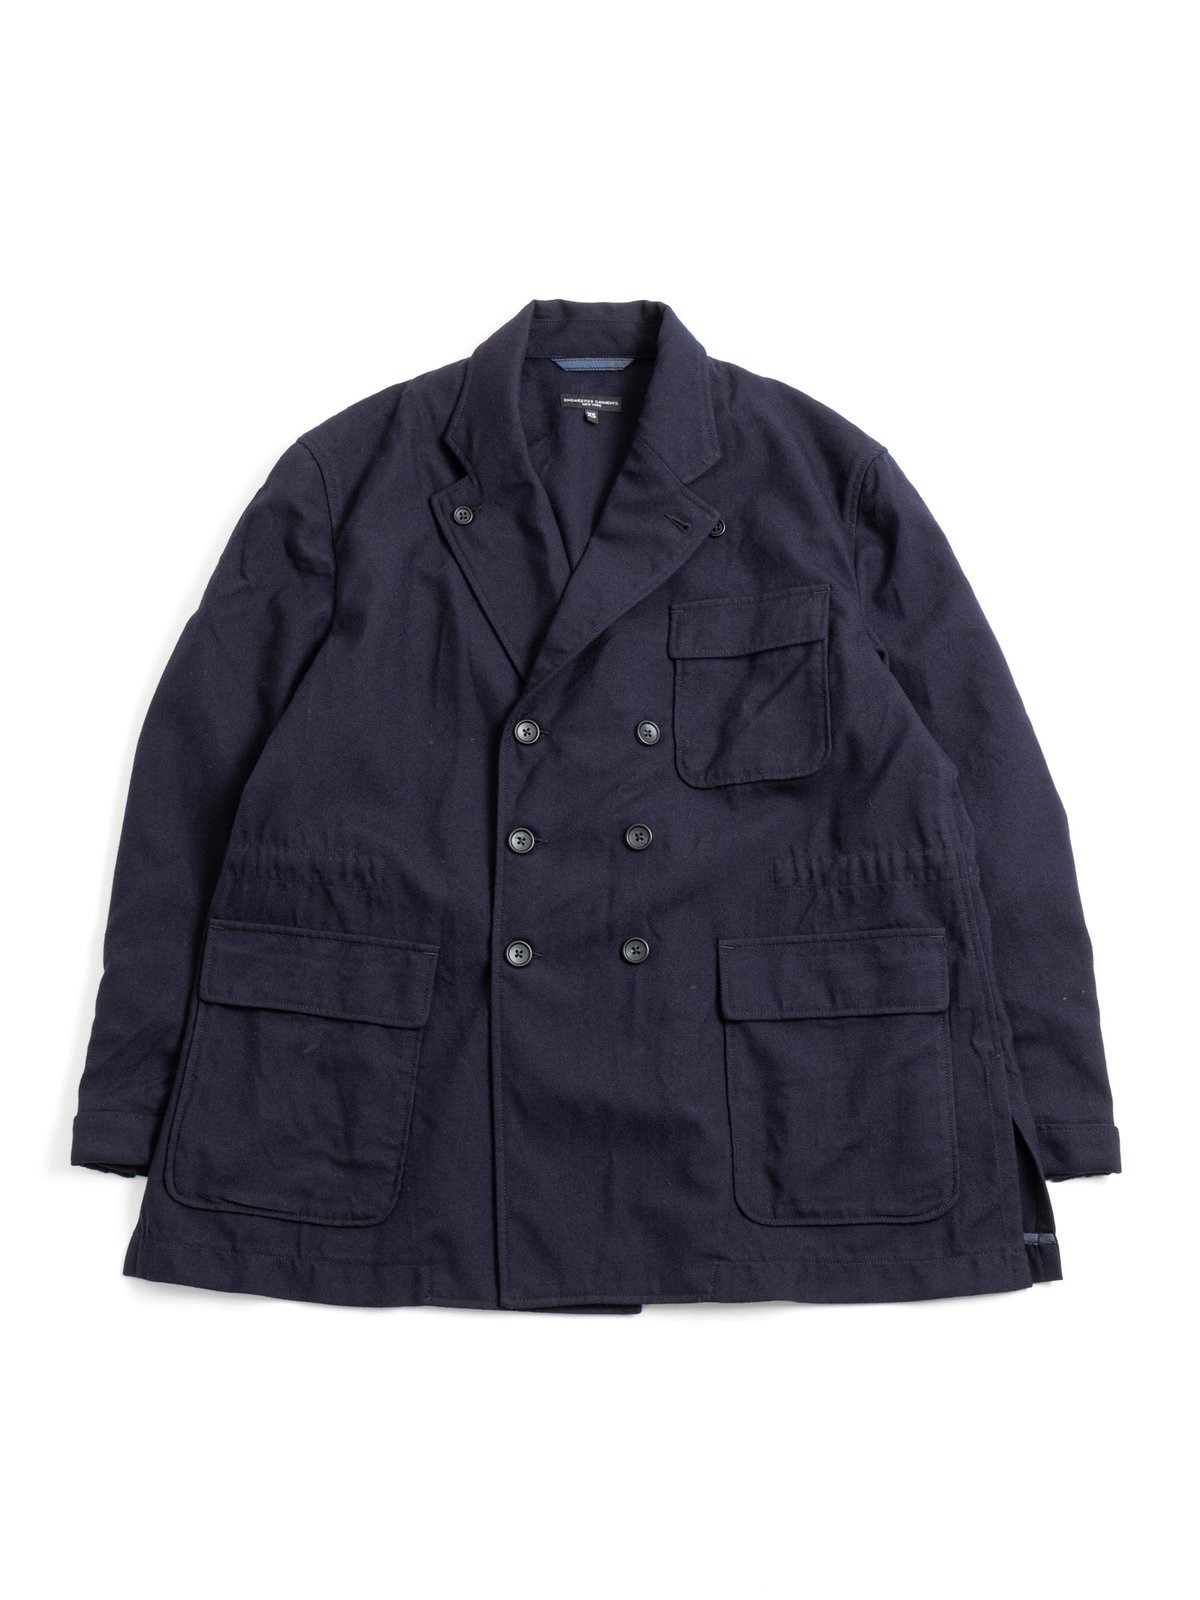 engineered garments daiki suzuki reefer jacket wool FW22